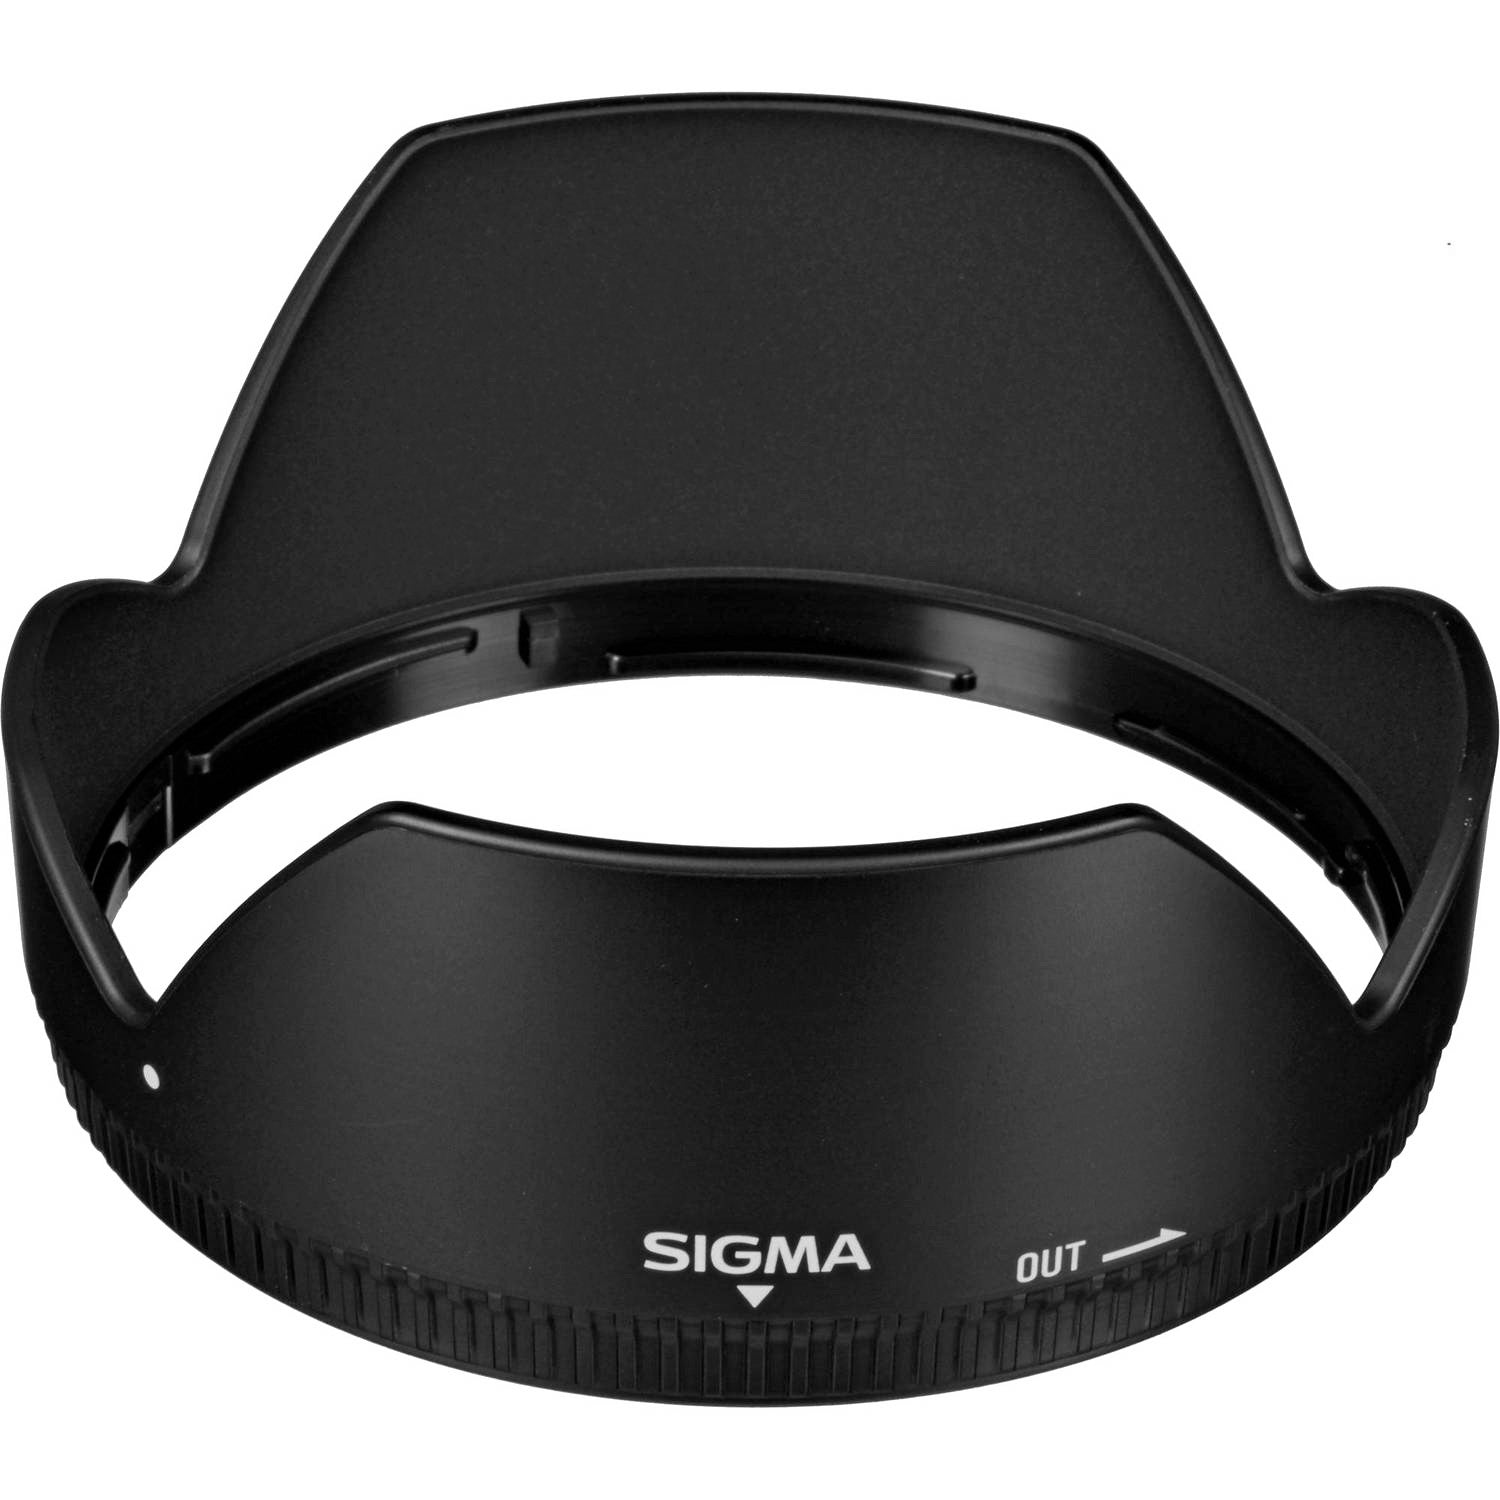 Sigma Lens Hood for 17-50mm F2.8 EX DC OS HSM Lens, 24mm F1.8 EX DG ASP Macro Lens & 28mm F1.8 EX DG Lens